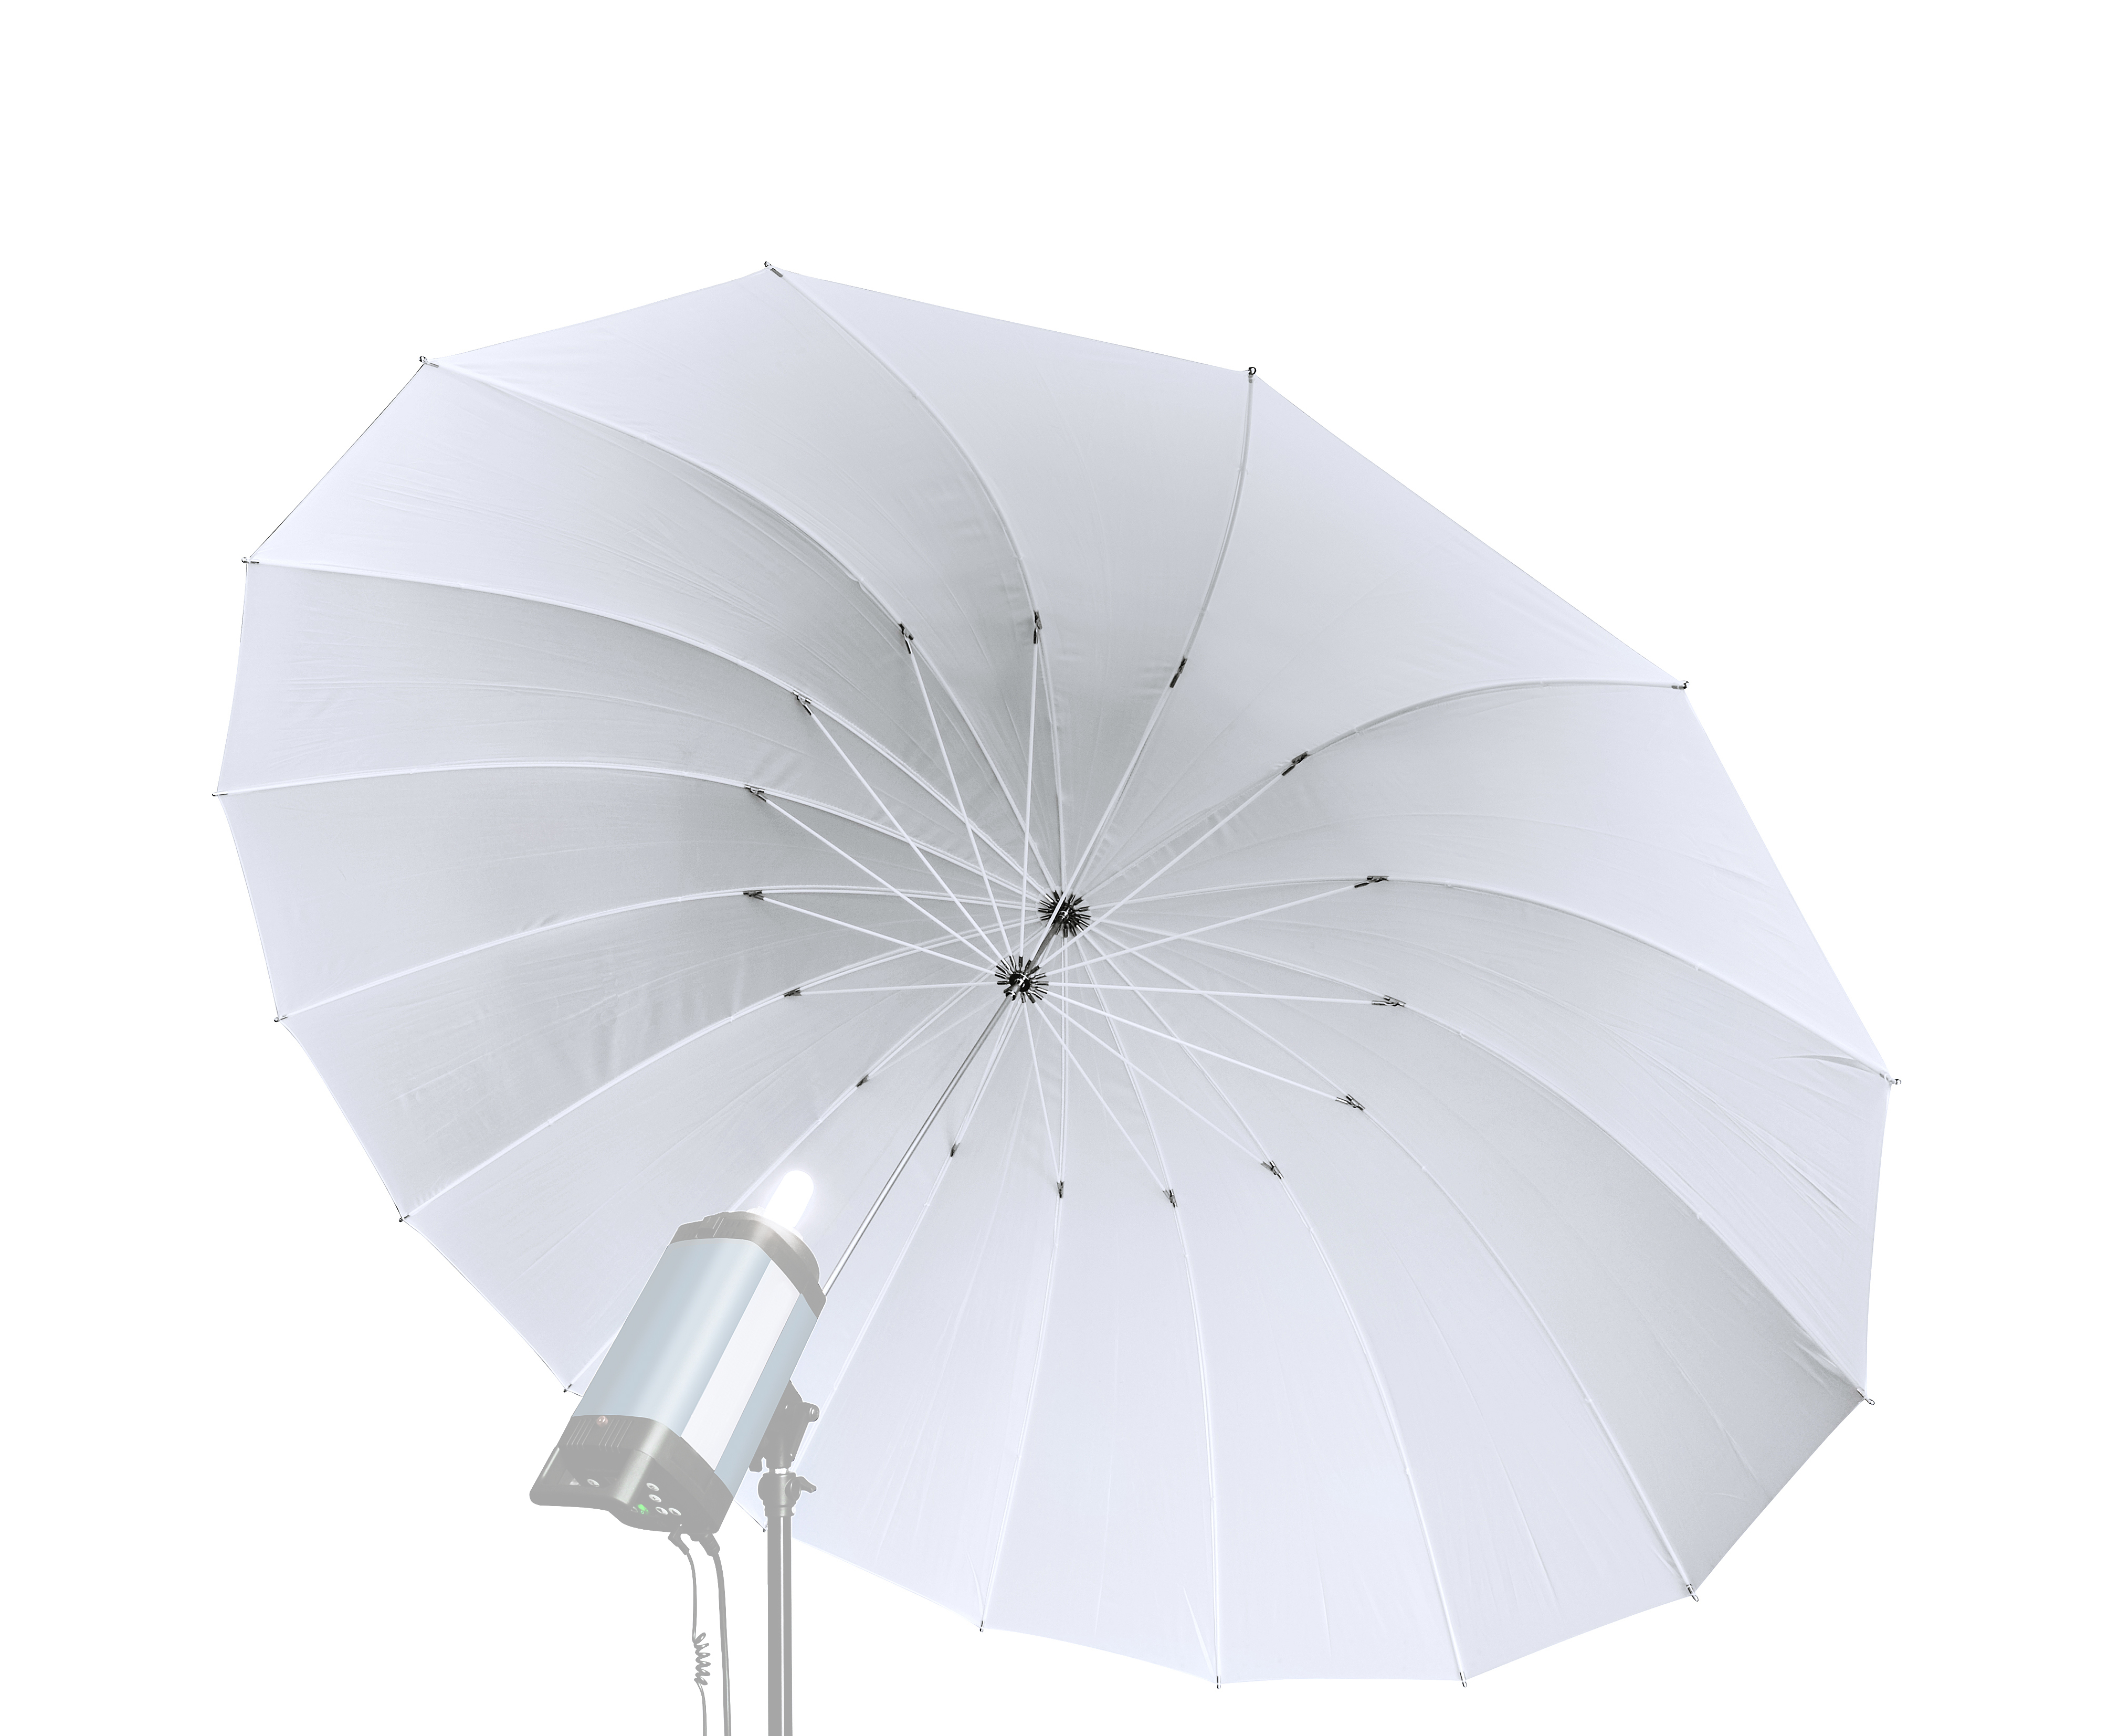 BRESSER SM-08 Jumbo Translucent Umbrella white 162 cm 